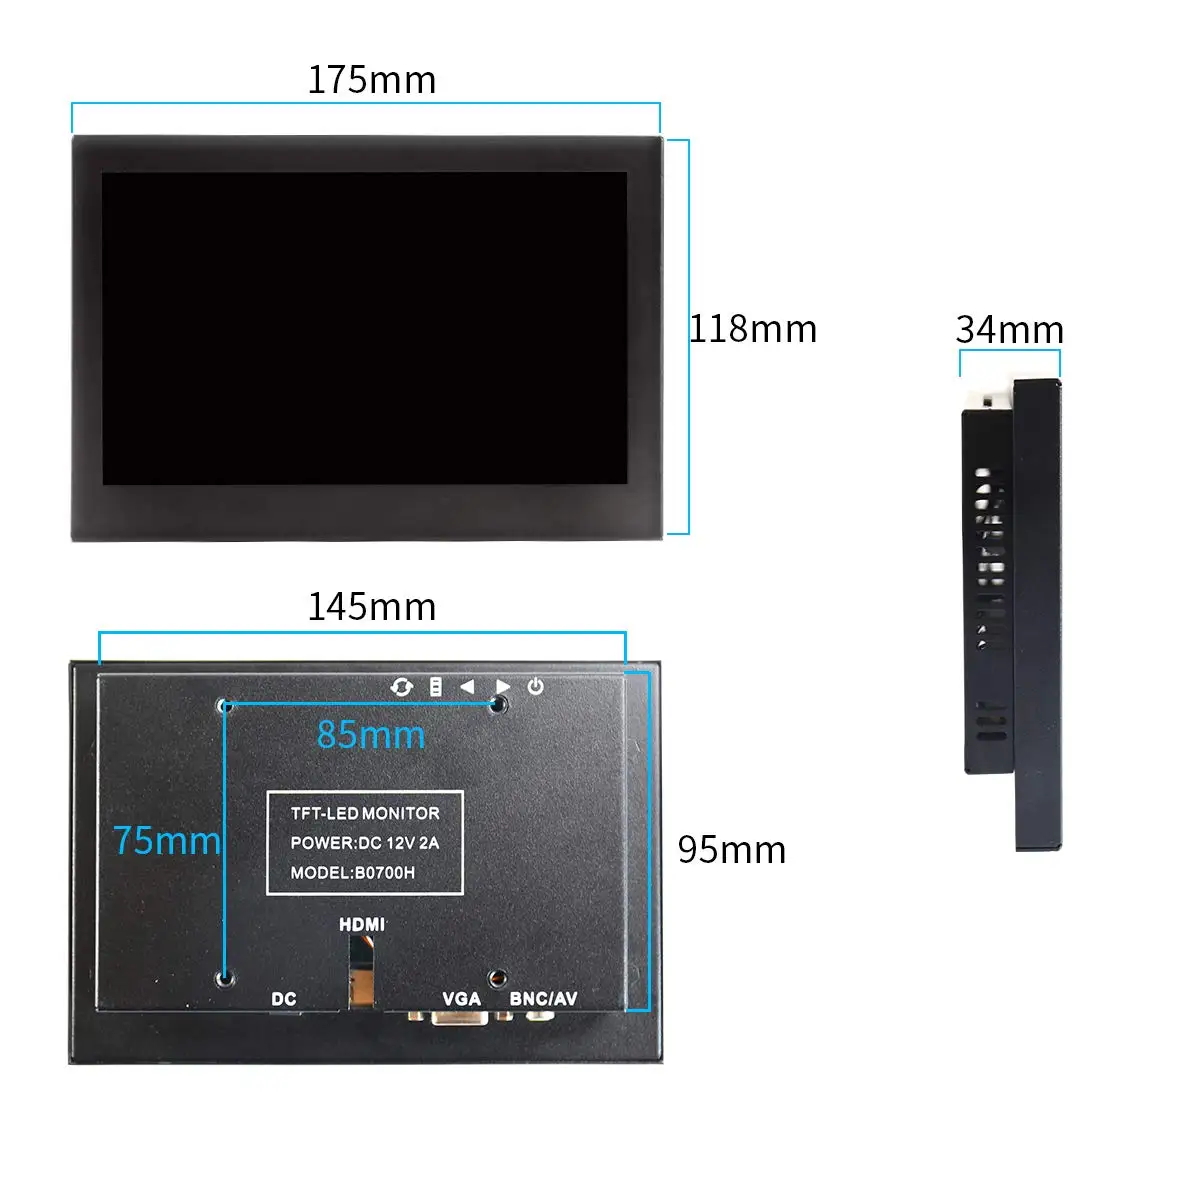 7 дюймов ЖК-дисплей Full HD 1024x600 Портативный Дисплей для PS3/xbox ПК Камера видоискатели AV Вход/VGA/HDMI/BNC черный металлический монитор в корпусе